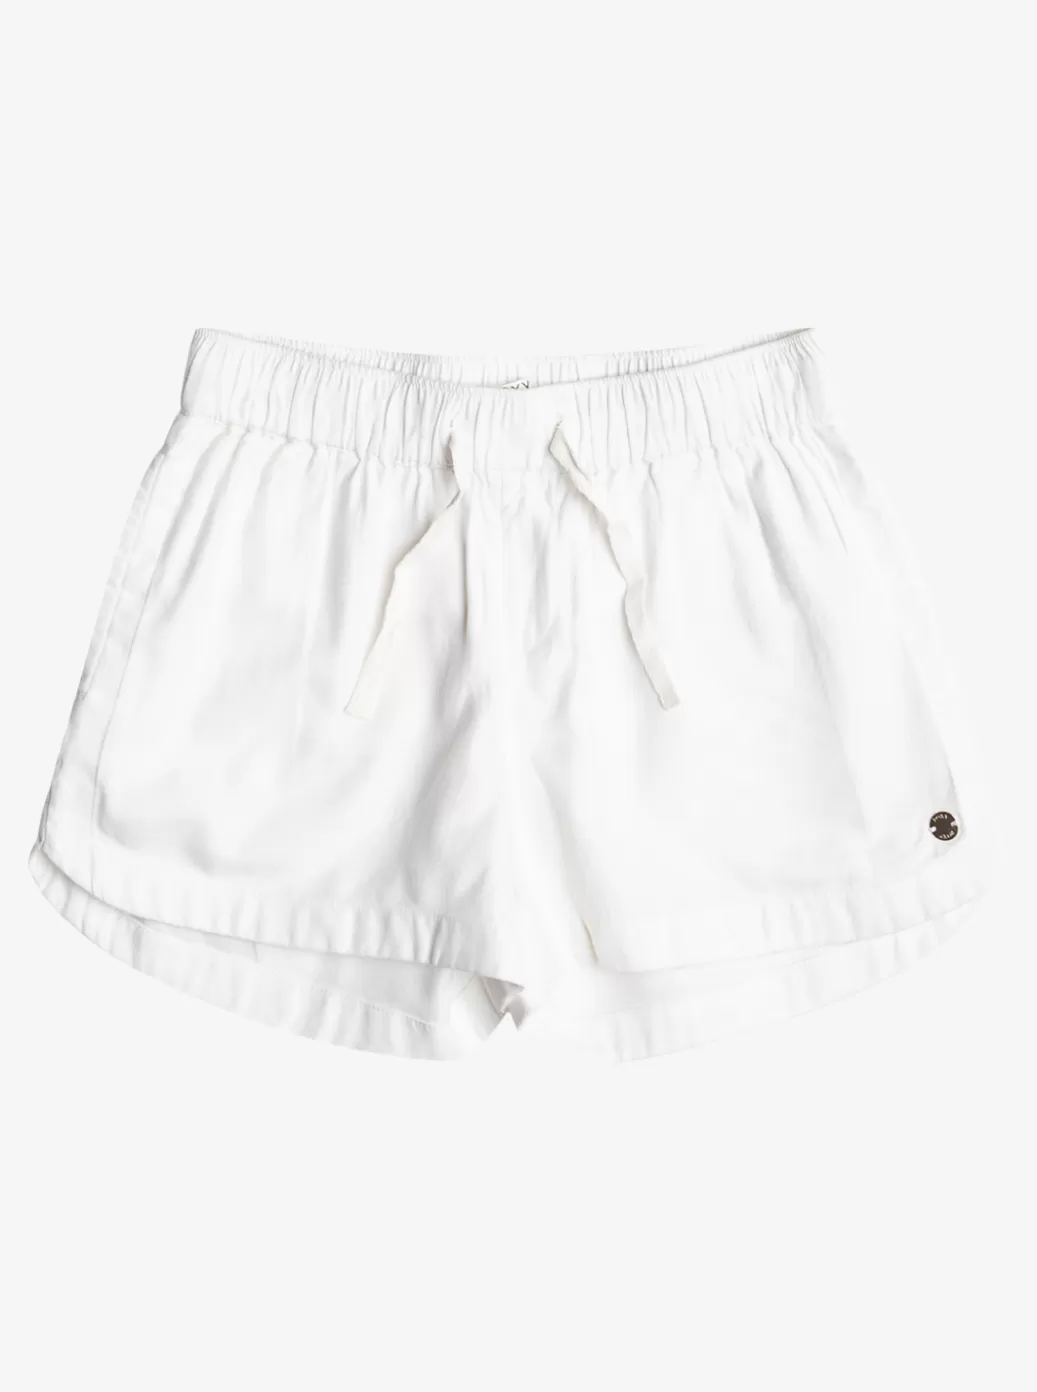 Skirts & Shorts | KIDS ROXY Girl's 4-16 Una Mattina Elastic Waist Shorts Snow White